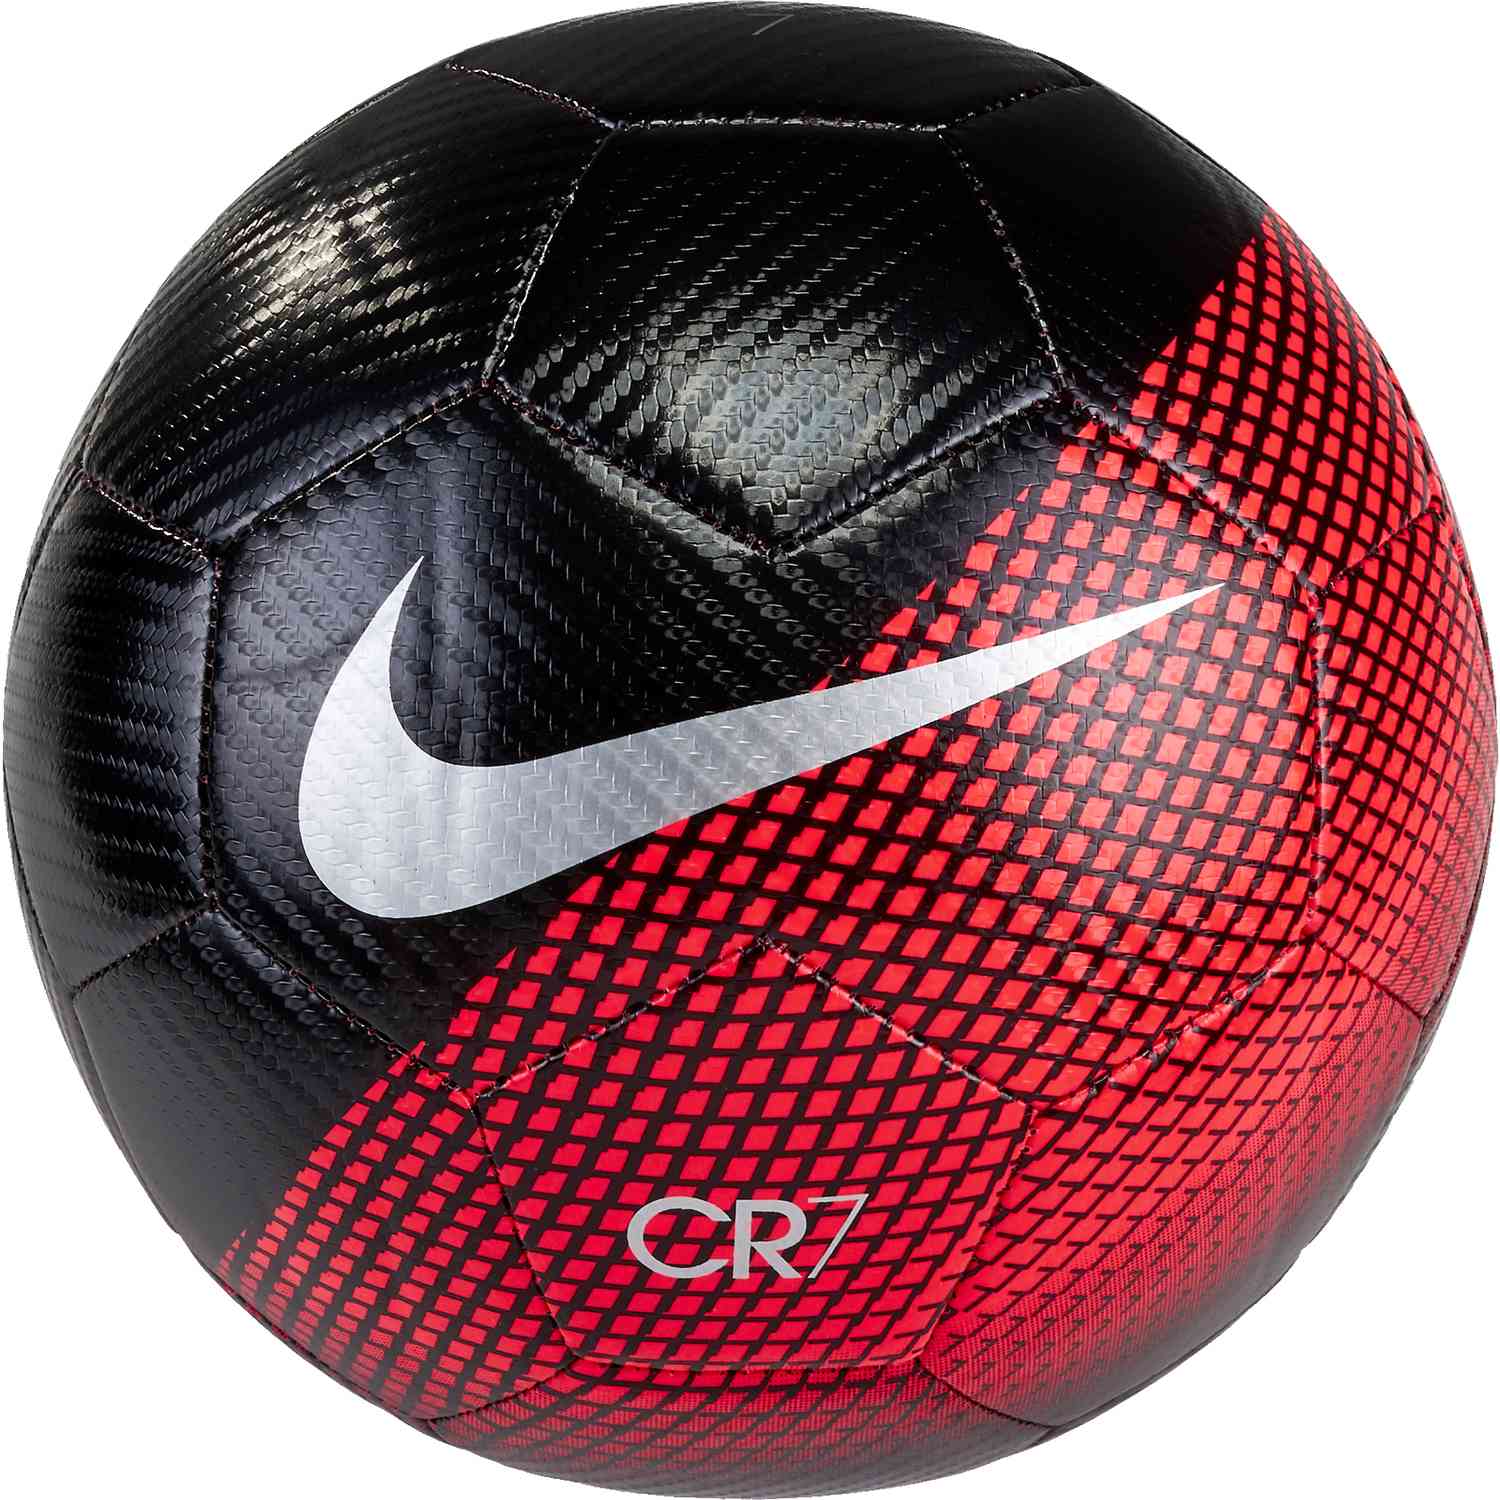 Nike CR7 Prestige Soccer Ball - Carved 